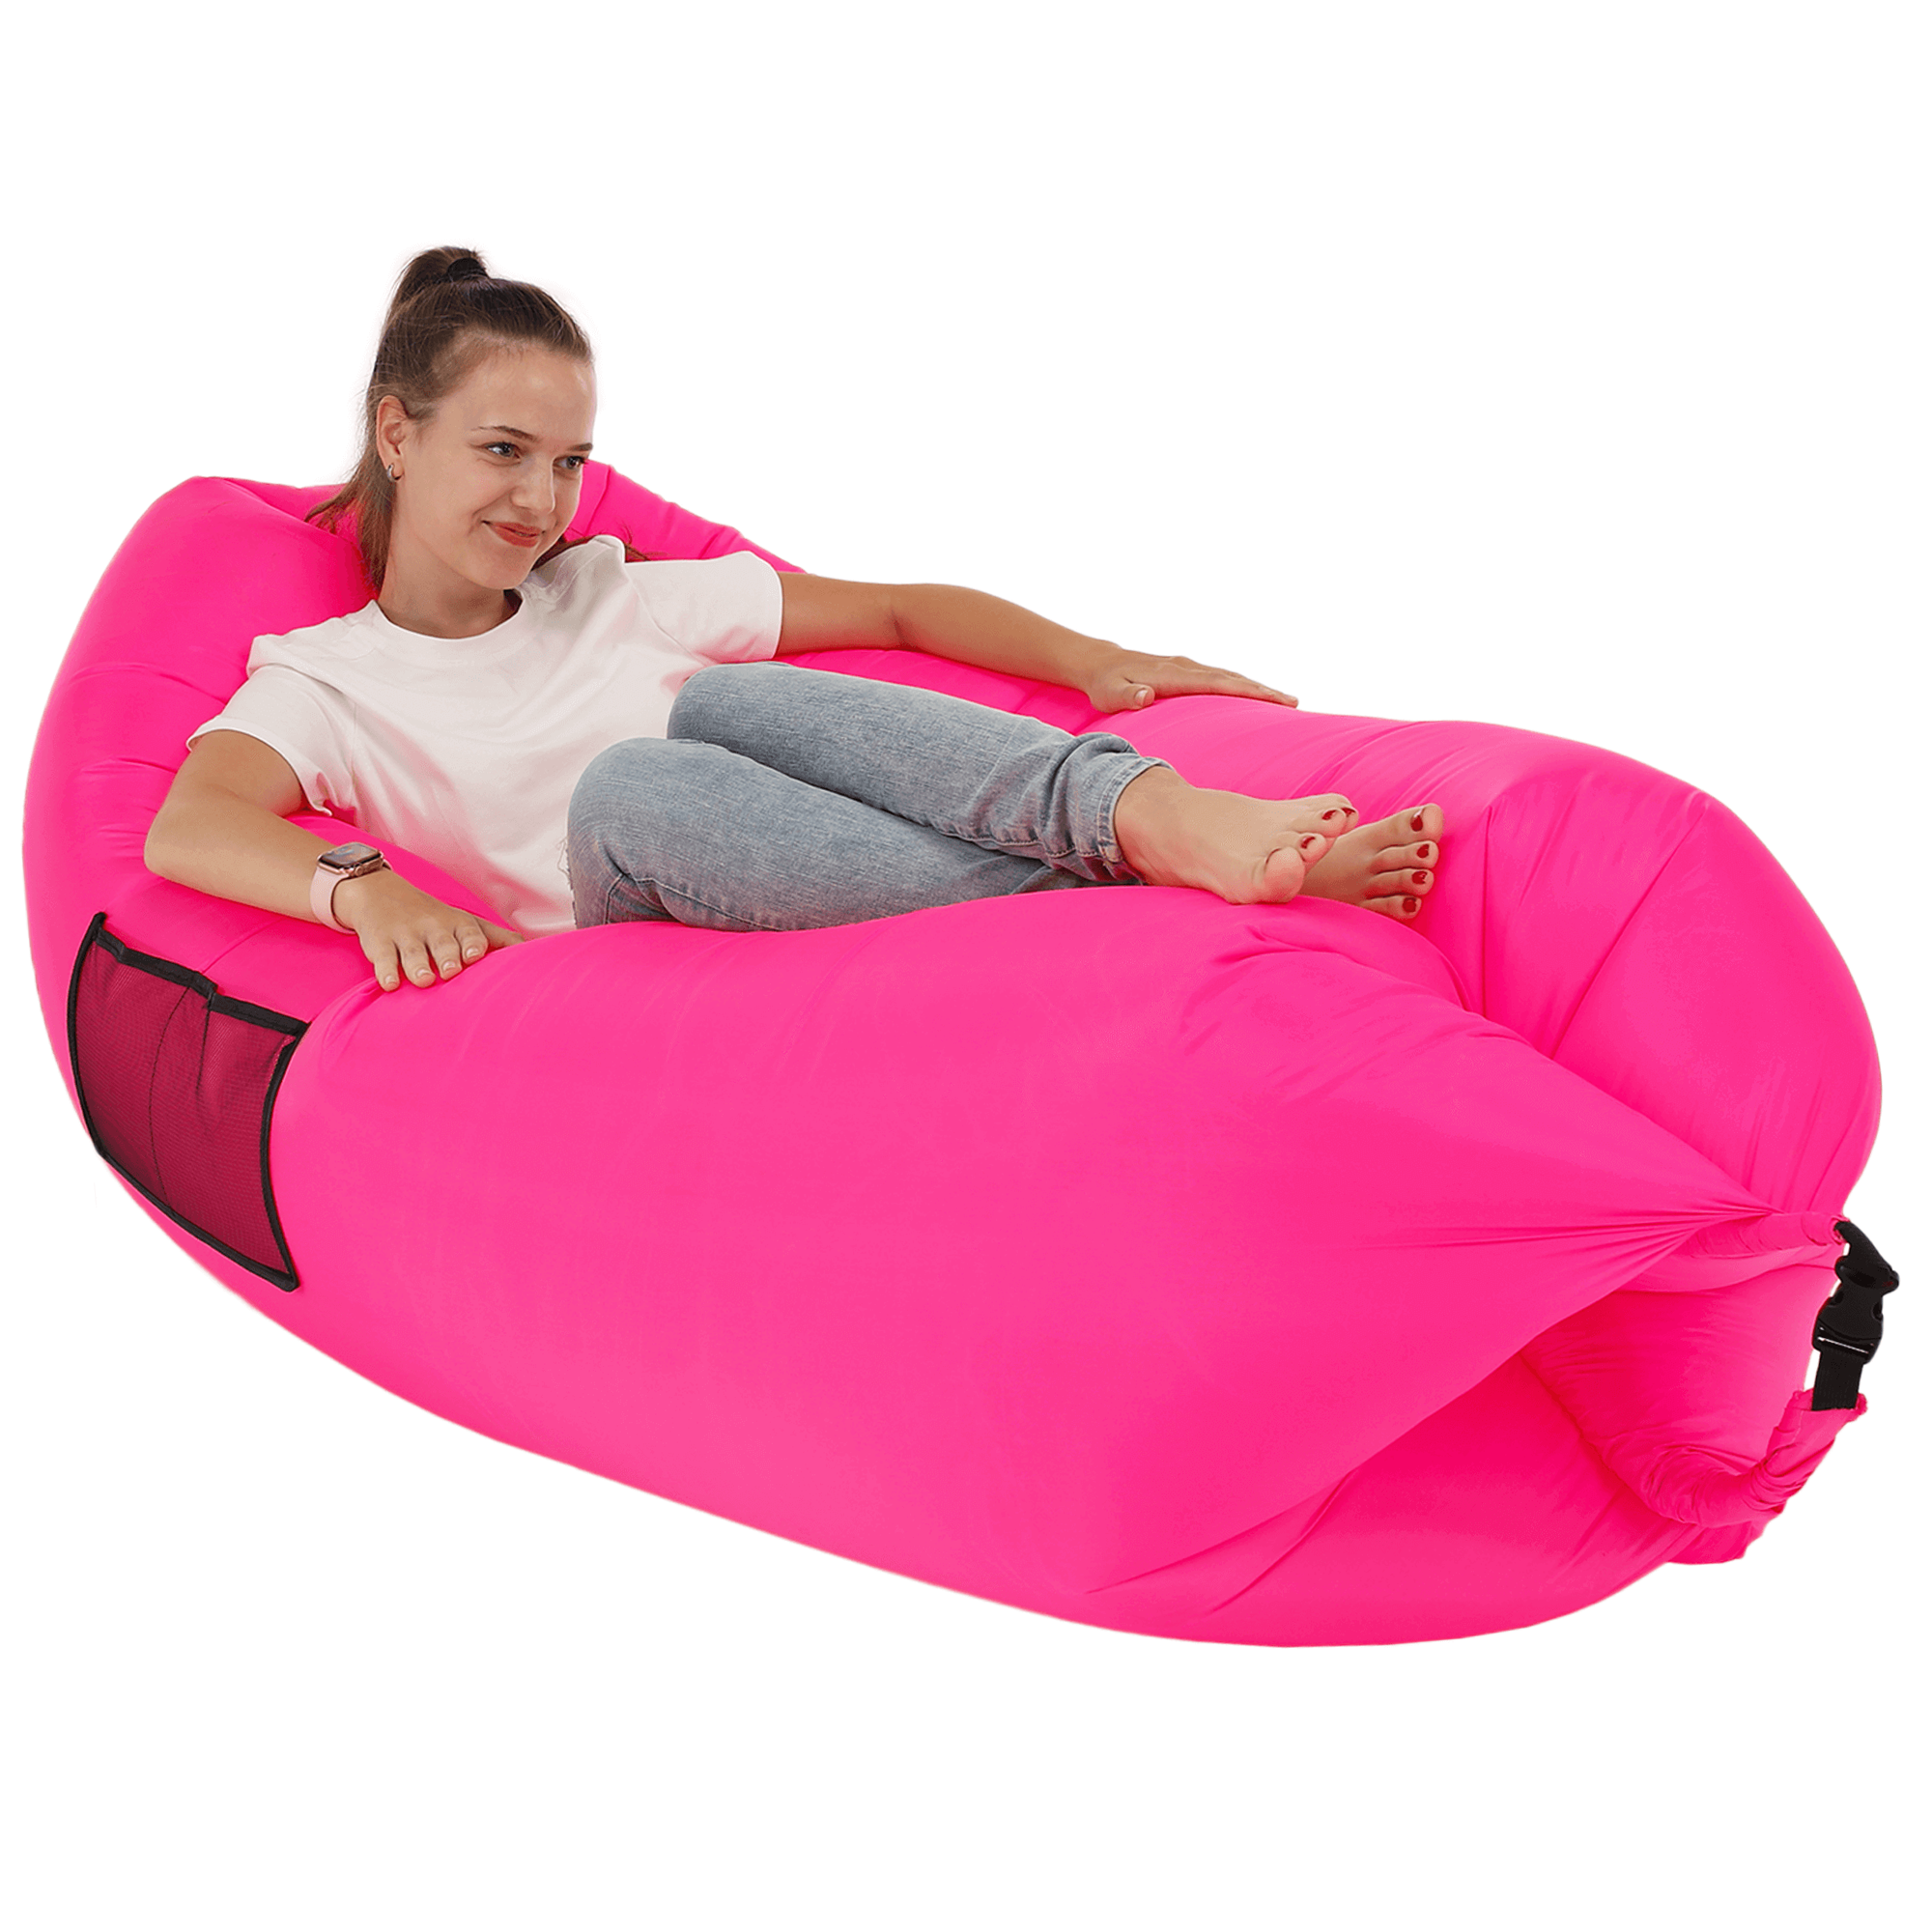 Geantă scaun gonflabilă / geanta leneșă, roz, LEBAG